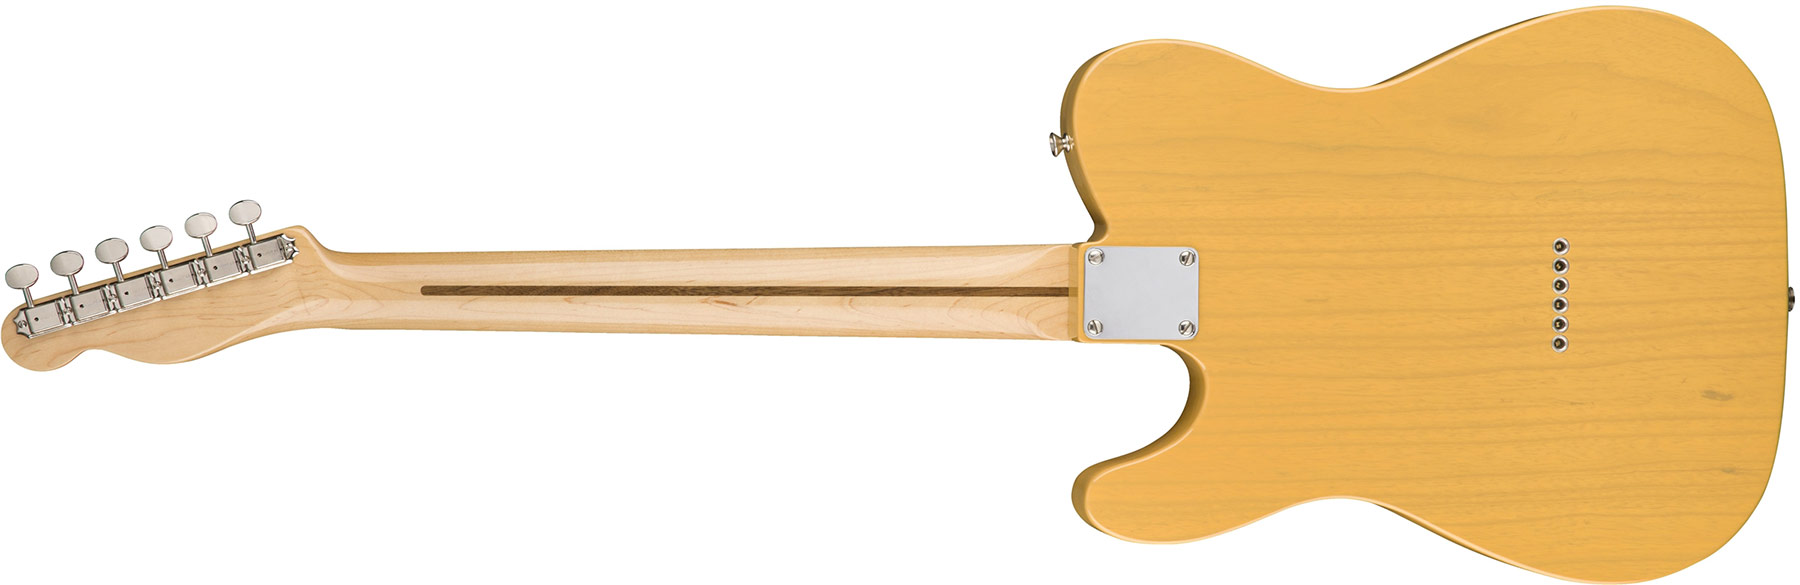 Fender Tele '50s American Original Usa Mn - Butterscotch Blonde - Televorm elektrische gitaar - Variation 3